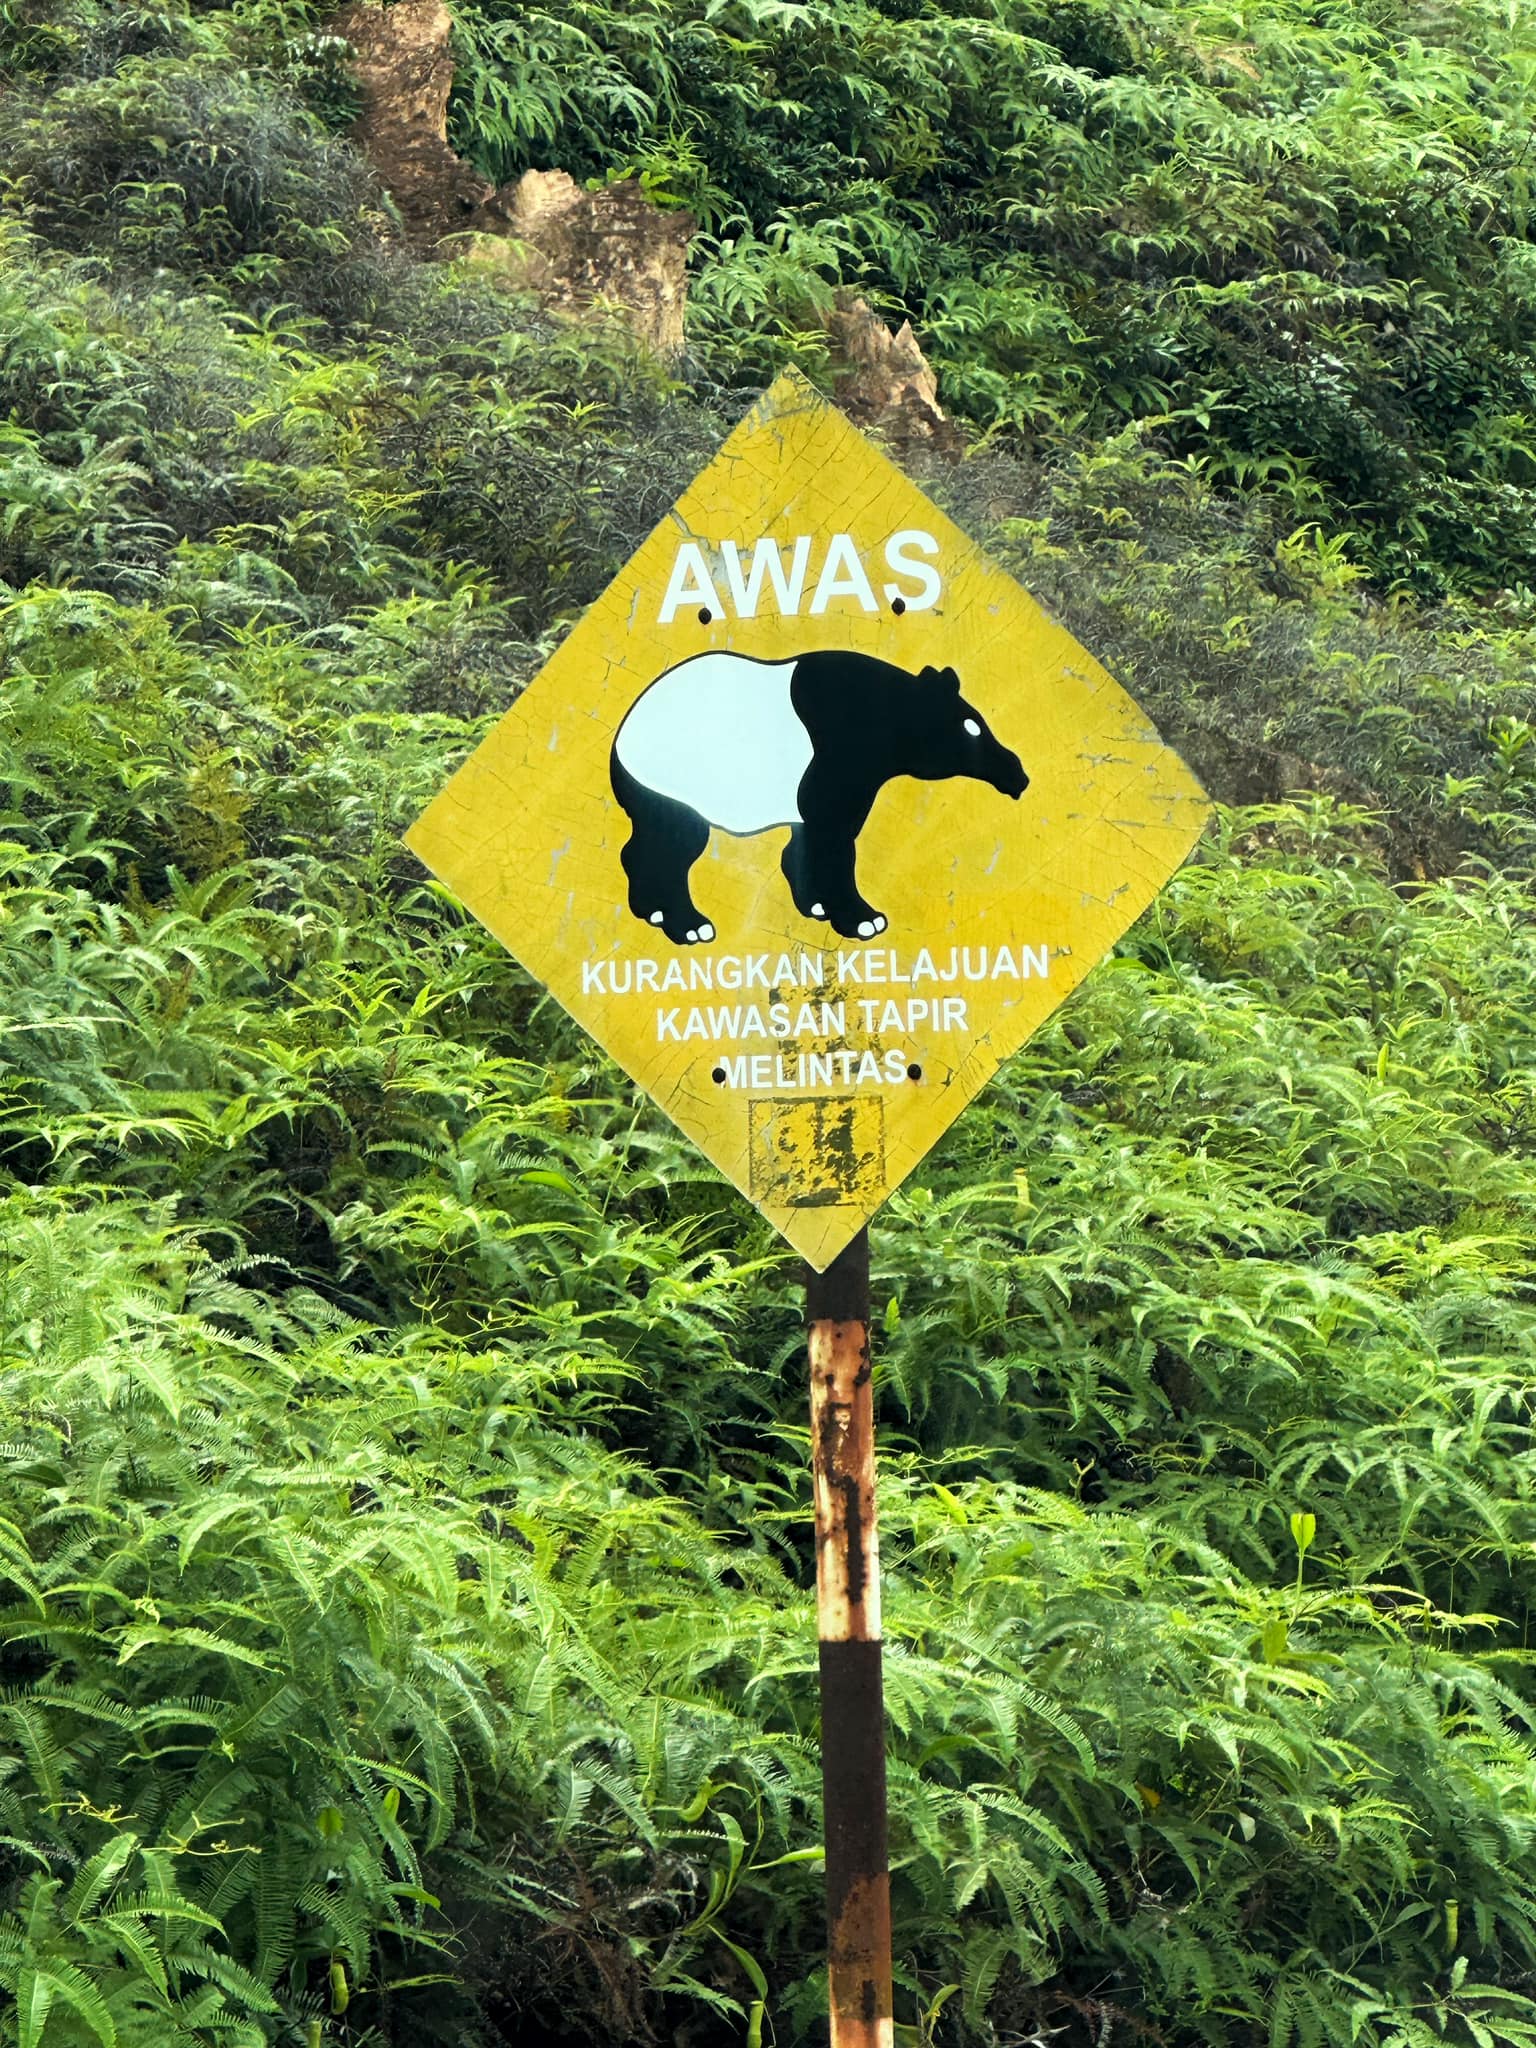 附近有告示牌，注明这个地方经常有马来貘出现，需小心和放慢速度前行，但还是避免不了悲剧发生。